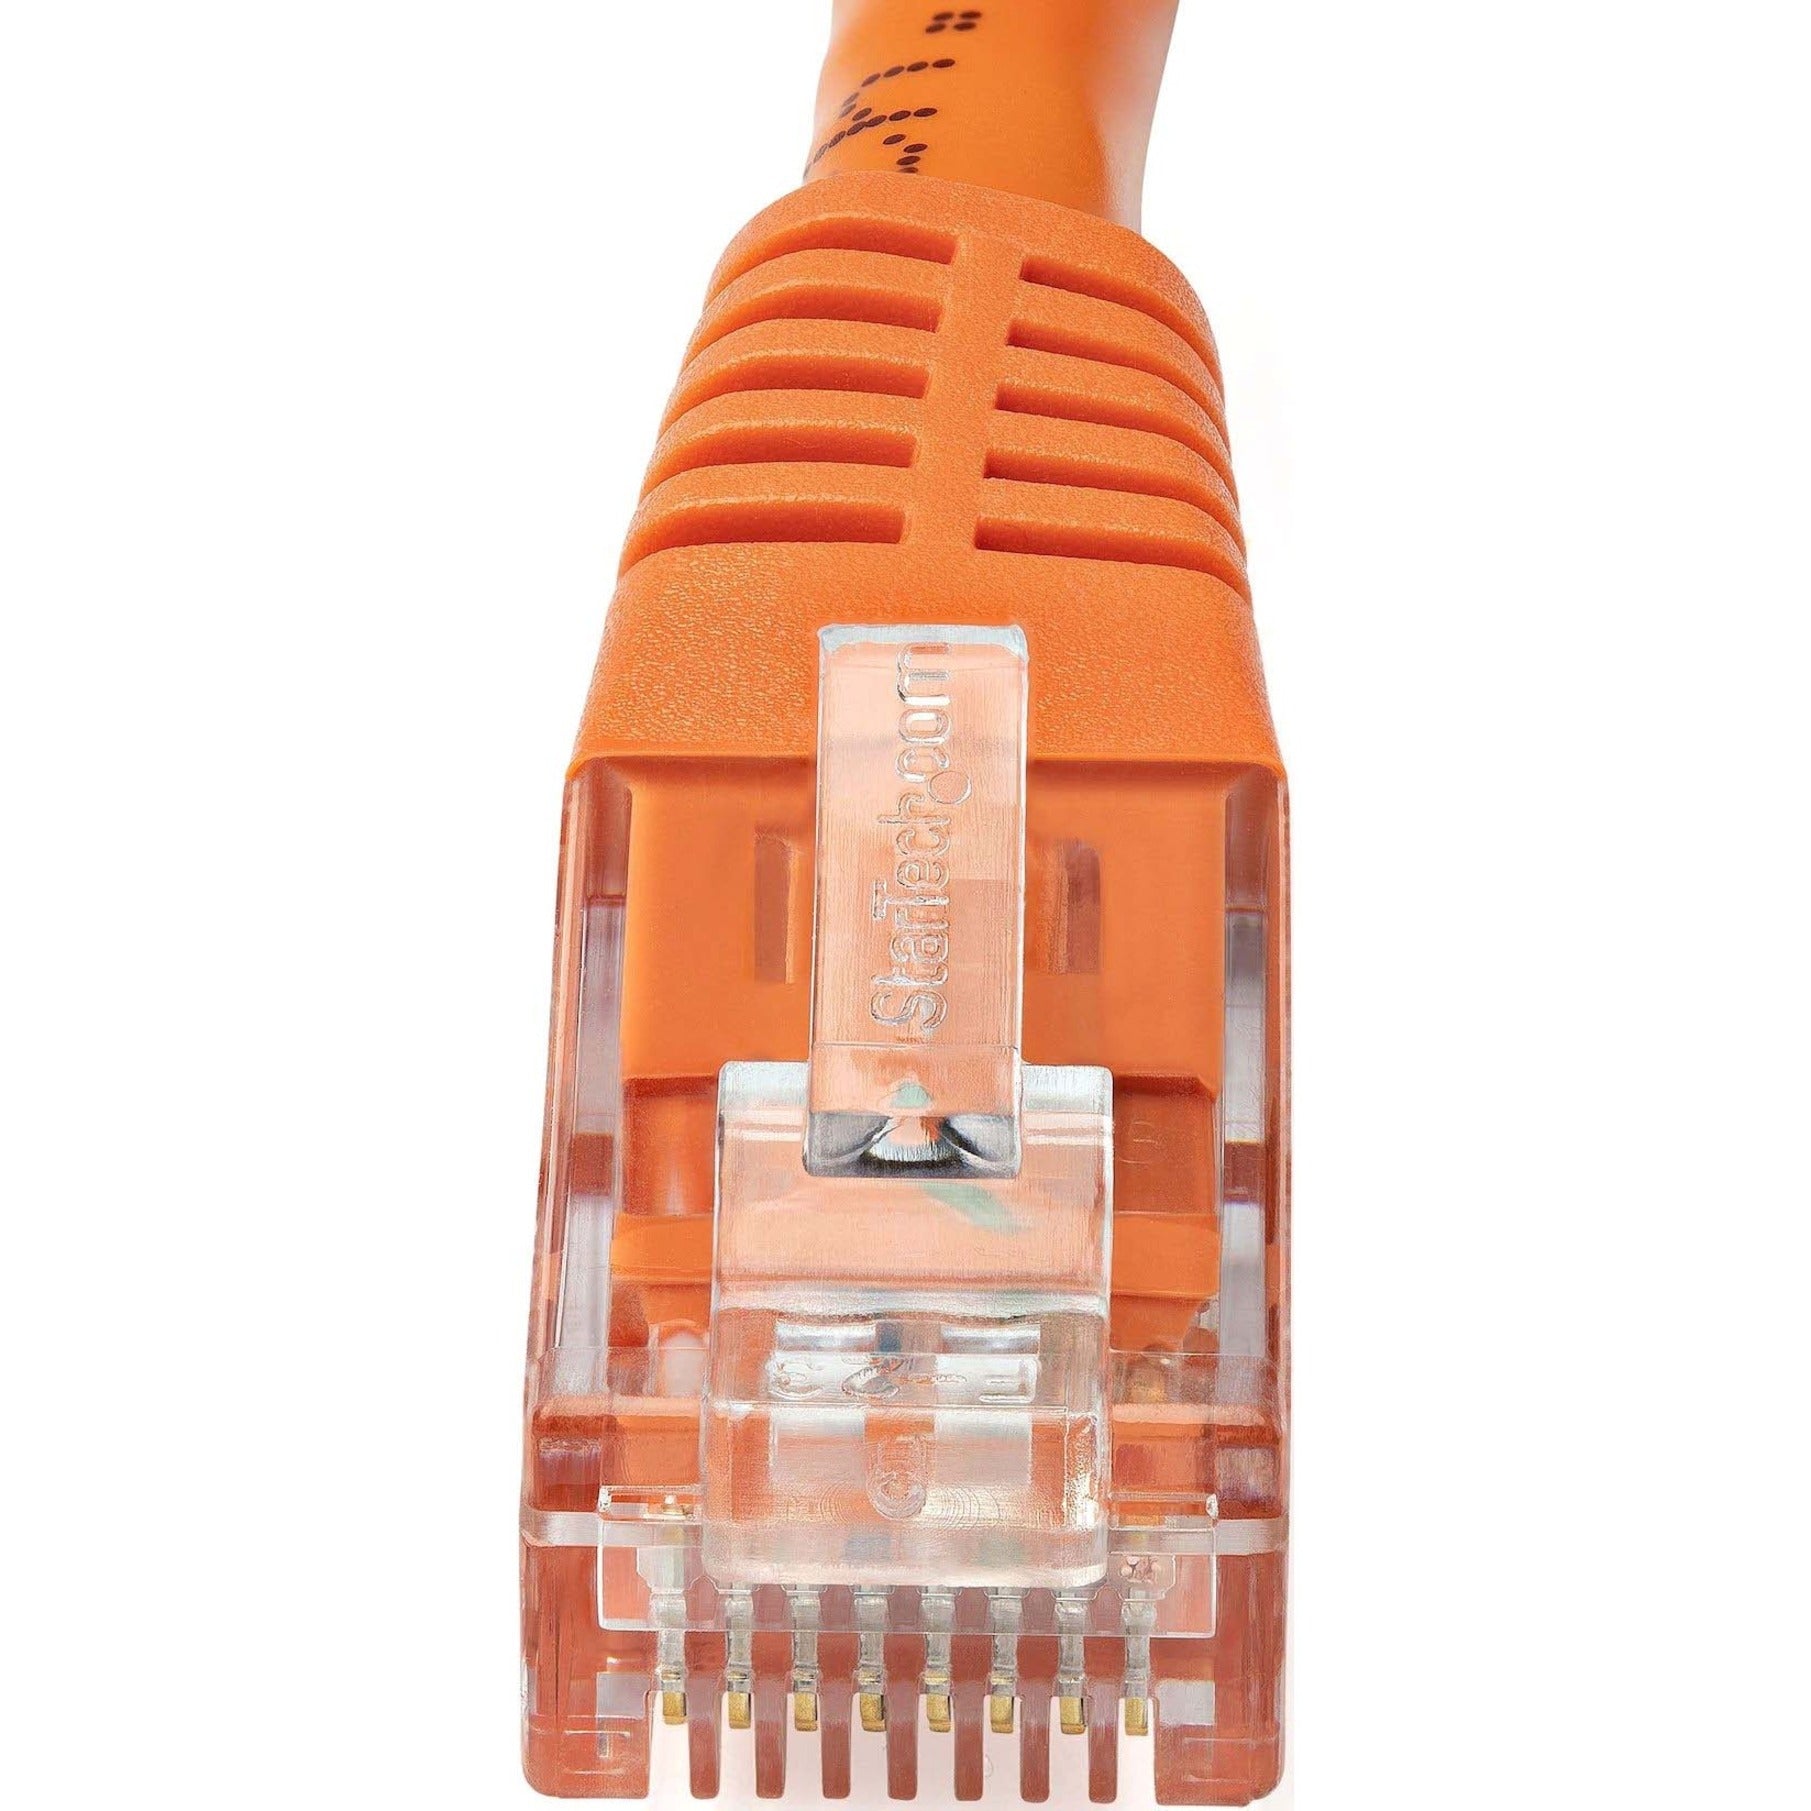 StarTech.com C6PATCH6OR 6ft Orange Cat6 UTP Patch Cable ETL Verified, Gigabit Ethernet Network Cord